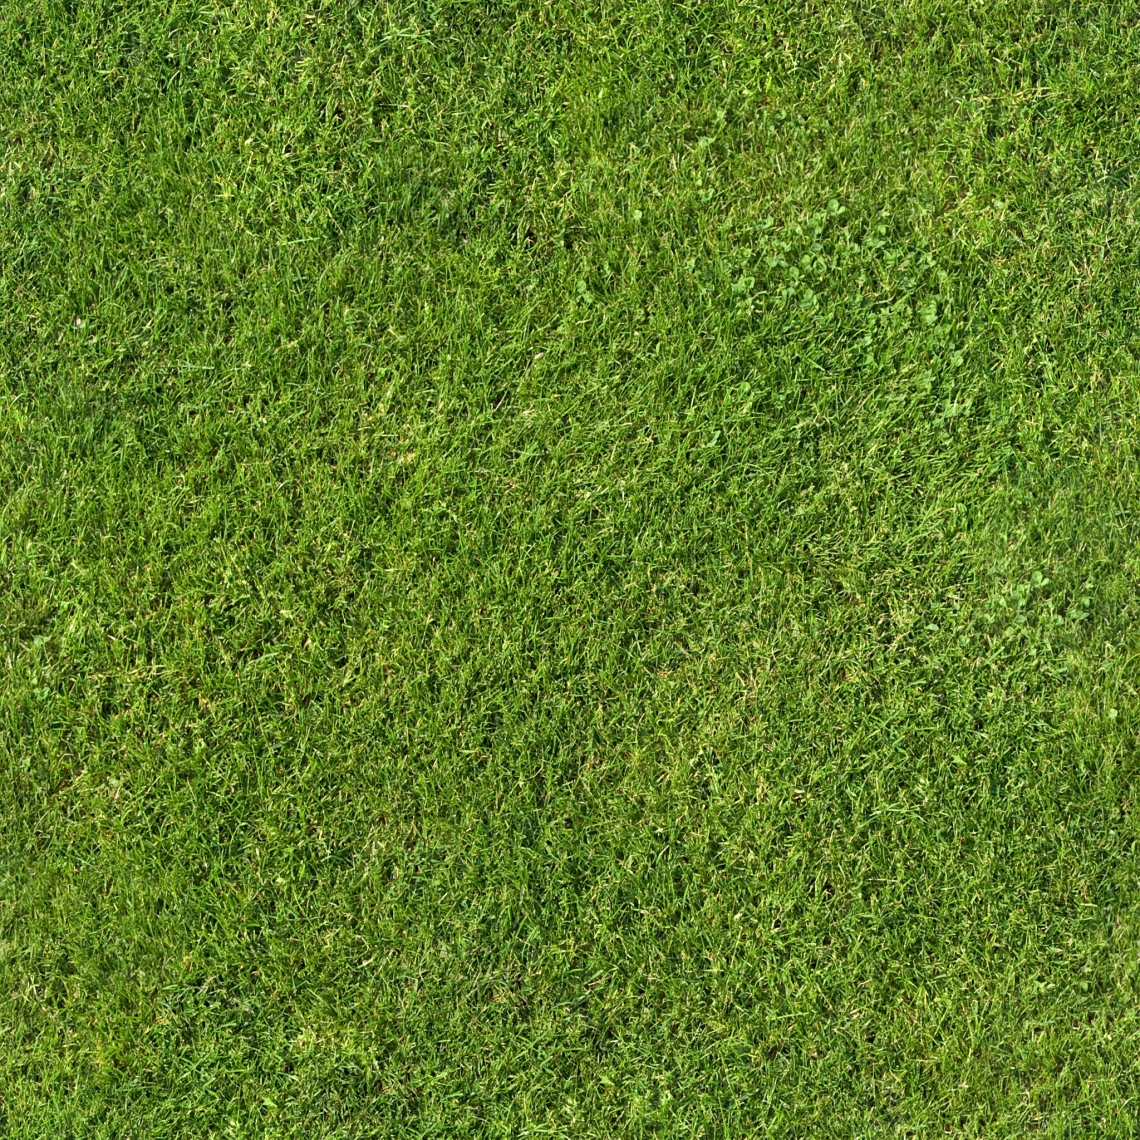 Grass Texture Seamless High Resolution